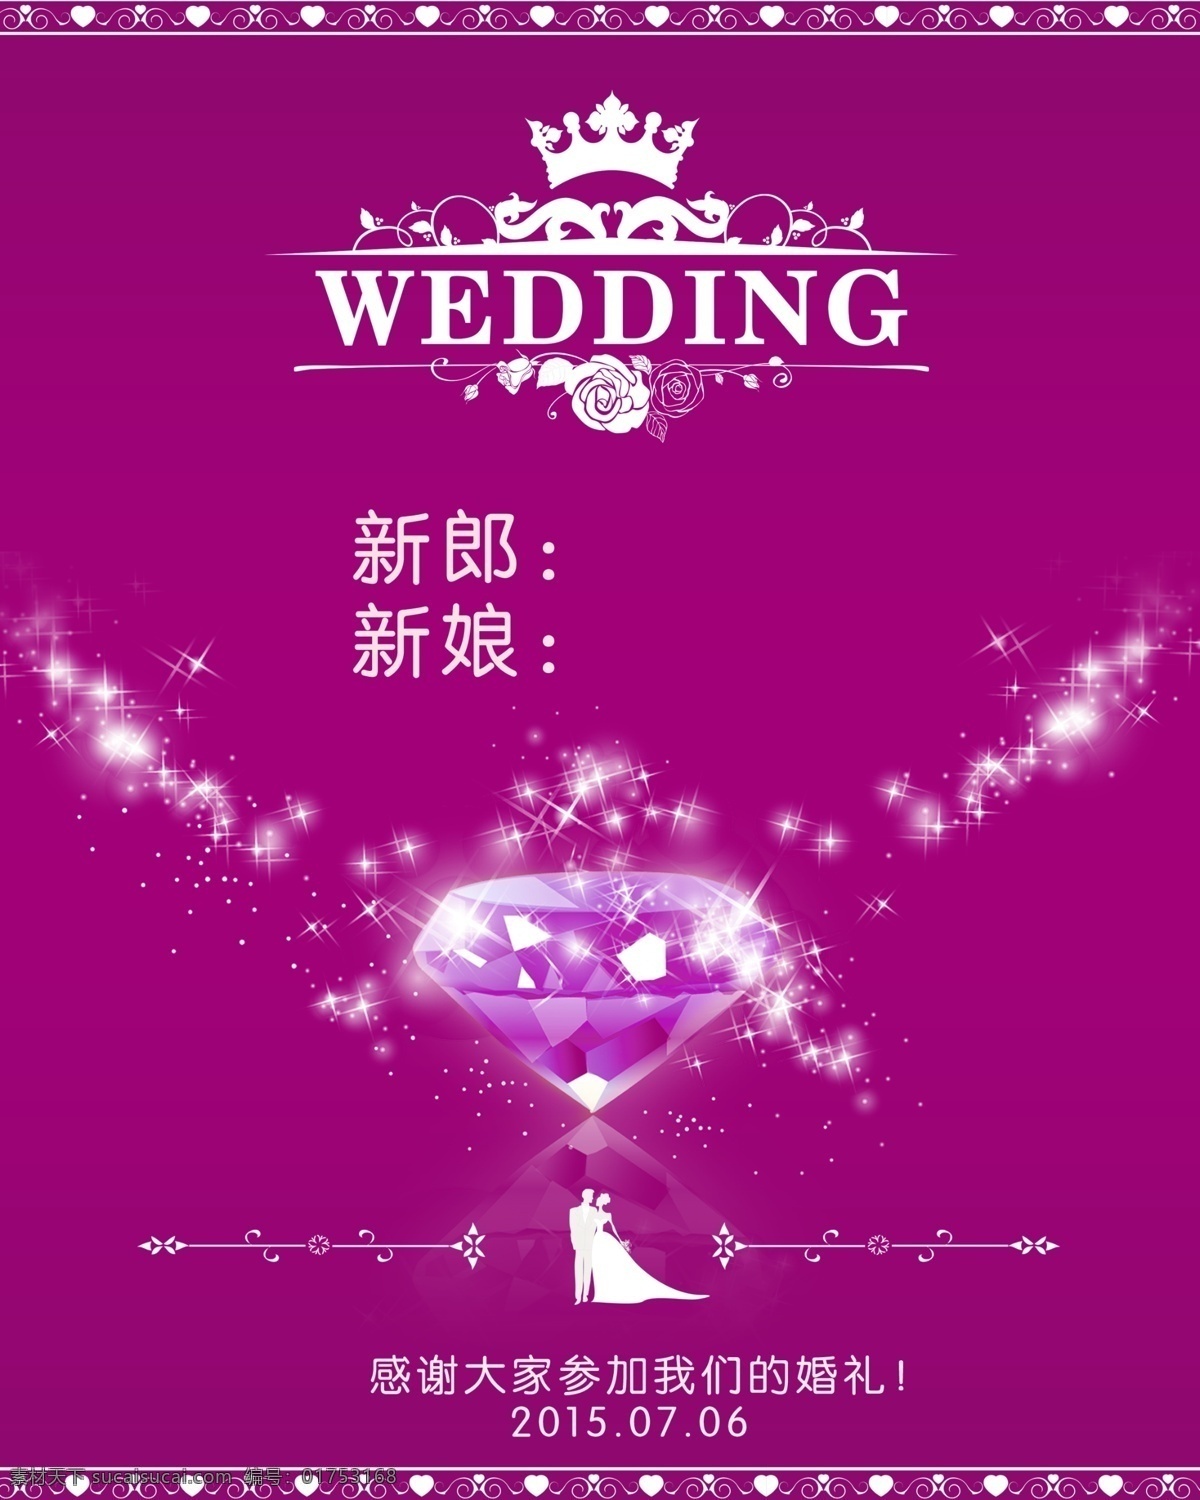 婚宴 水牌 婚宴水牌 婚宴指引牌 欢迎参加 我们 婚礼 wedding 皇冠 原创设计 原创海报